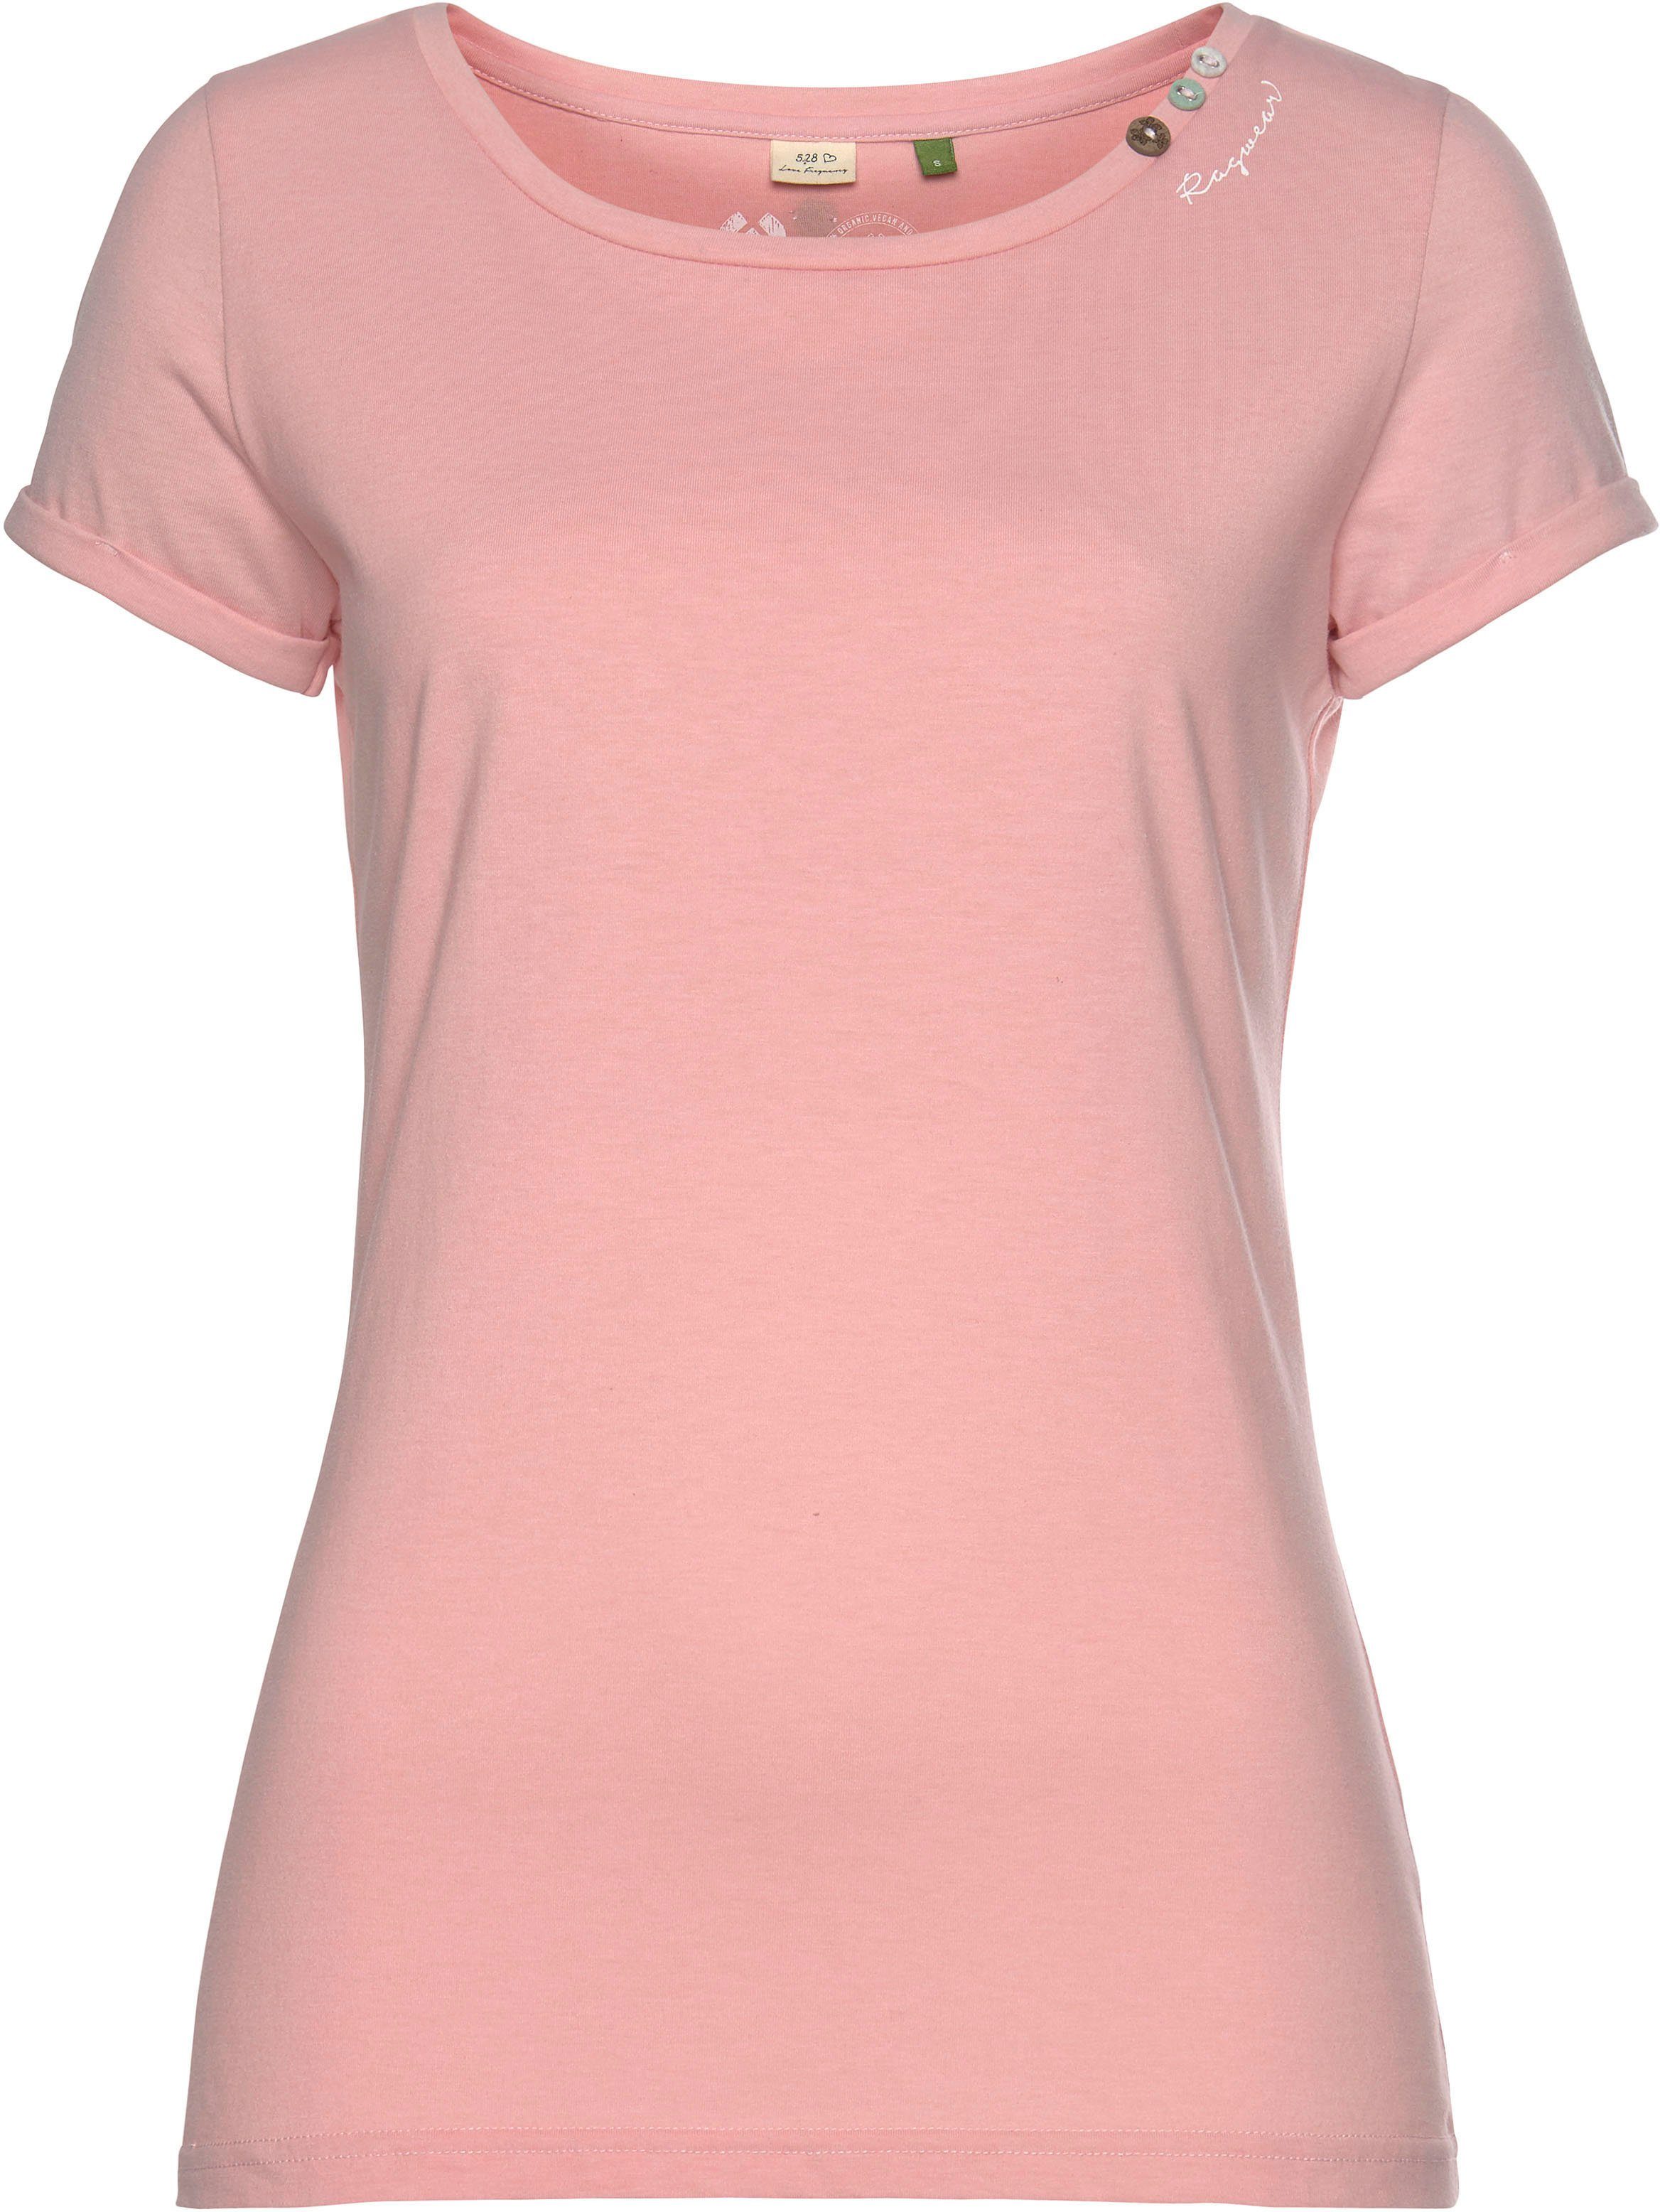 Ragwear Plus T-Shirt »FLORAH A ORGANIC« mit Zierknöpfen und  charakteristischen Label-Applikationen